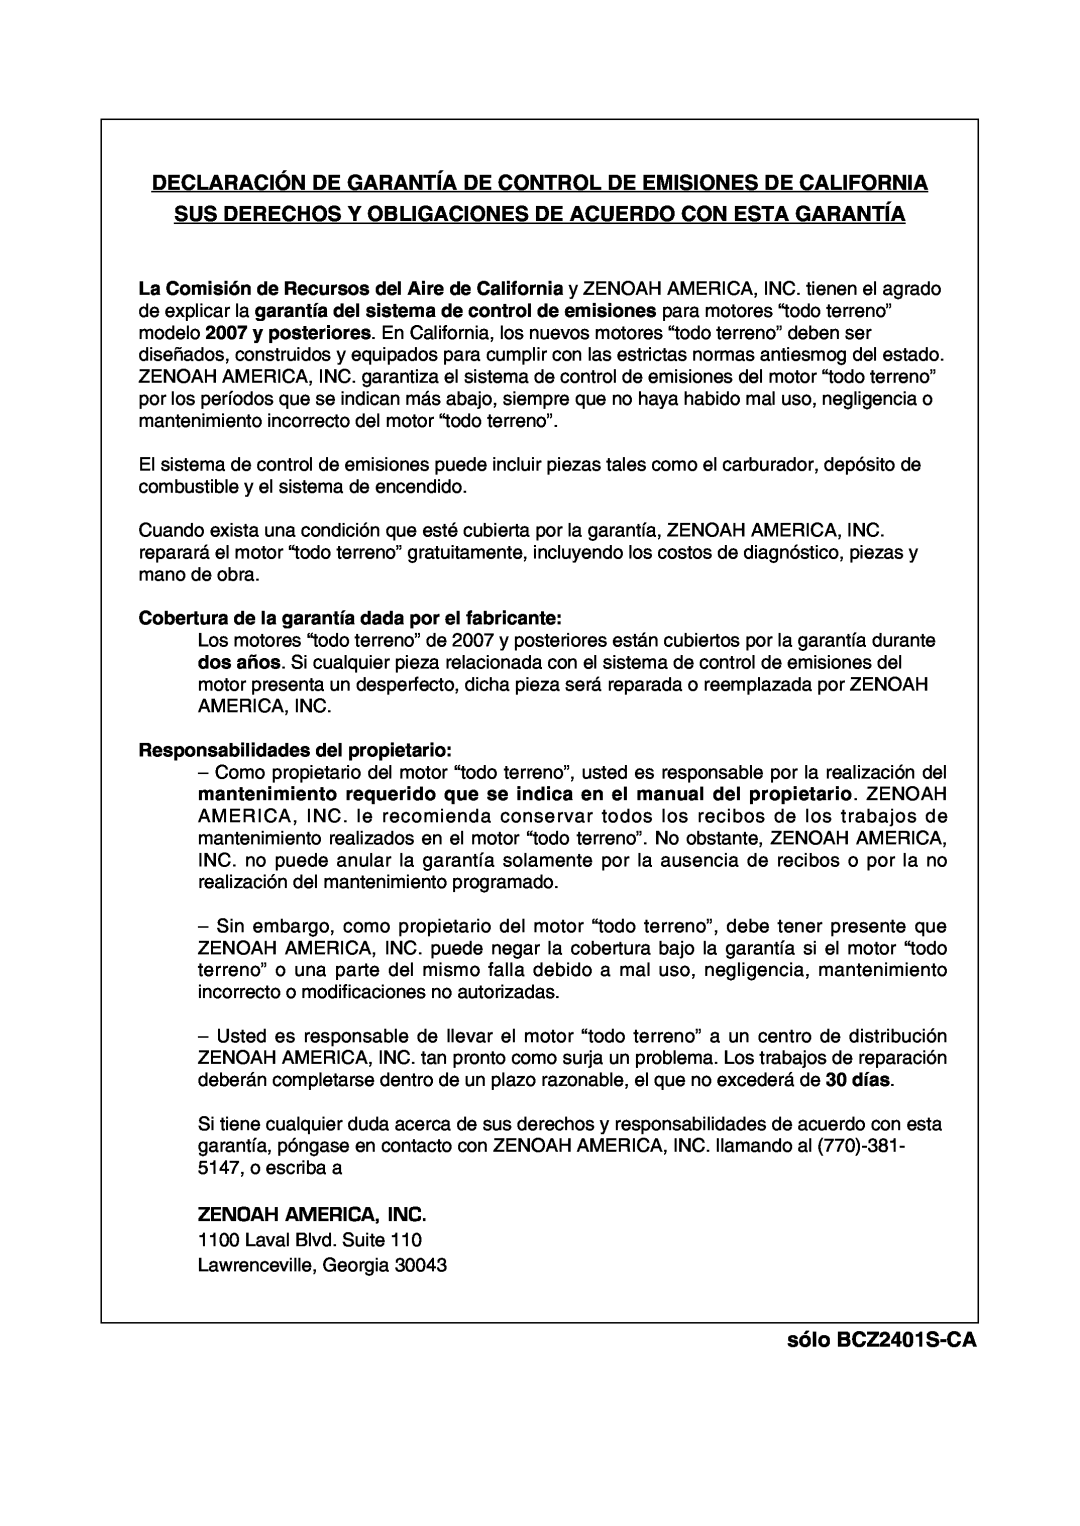 RedMax manual Declaración De Garantía De Control De Emisiones De California, sólo BCZ2401S-CA 